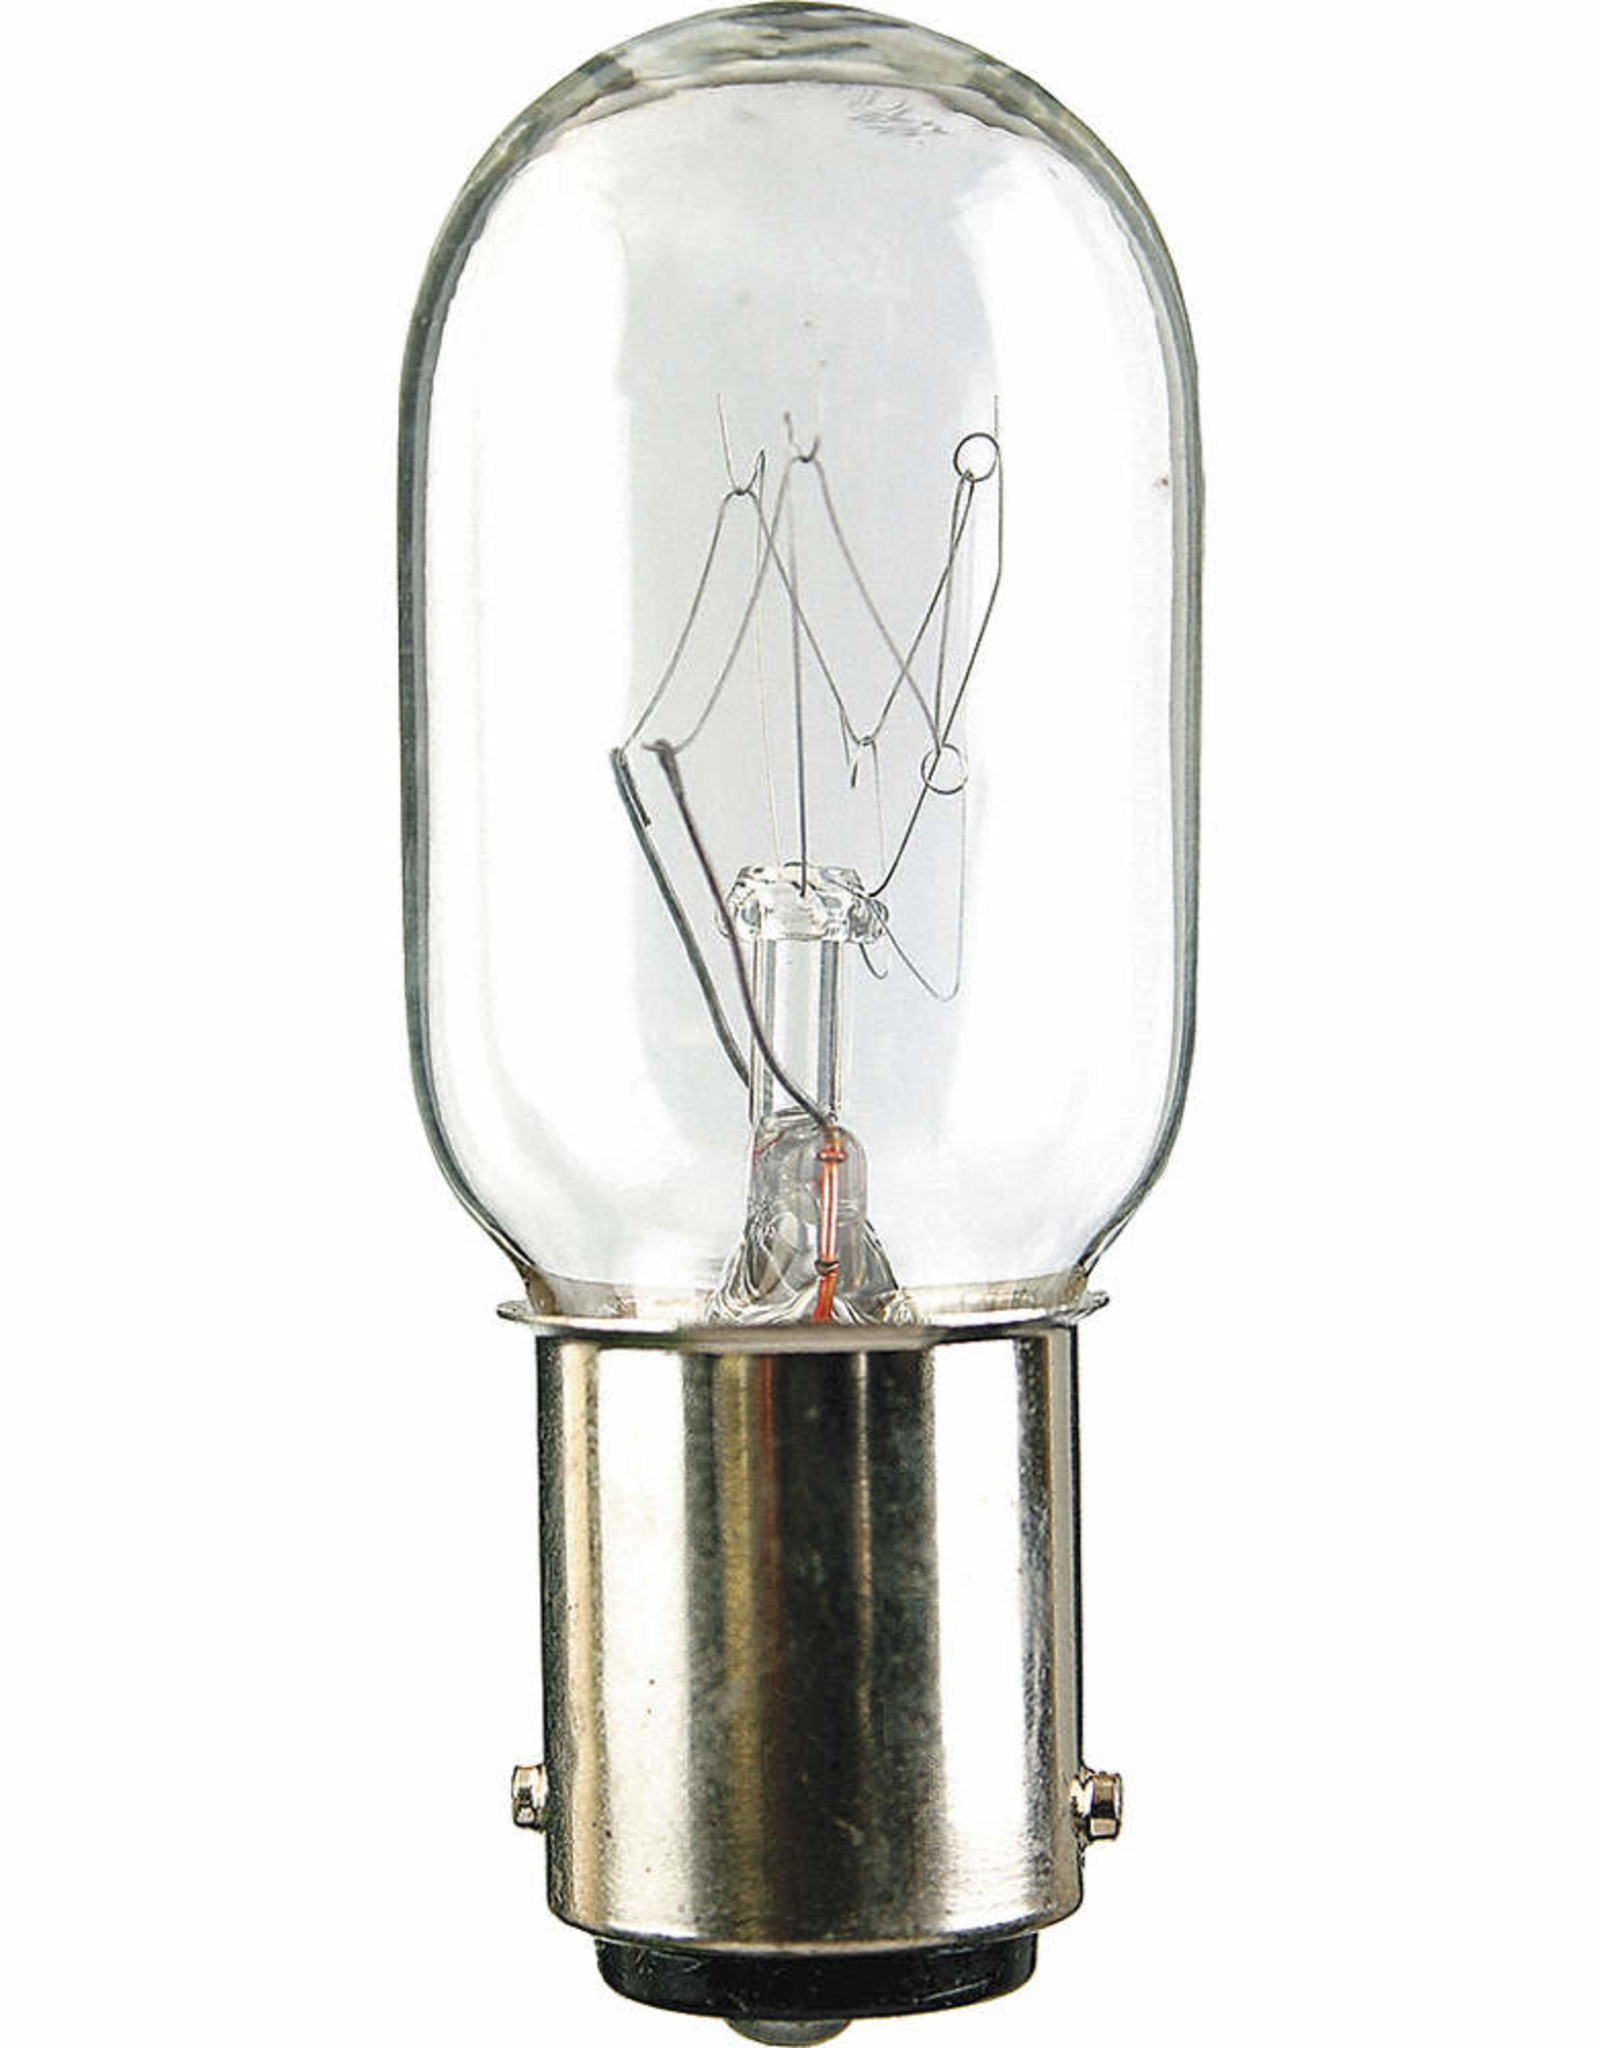 Light Bulb, 110/120 Volts, 15 Watts, Elna #444100 : Sewing Parts Online